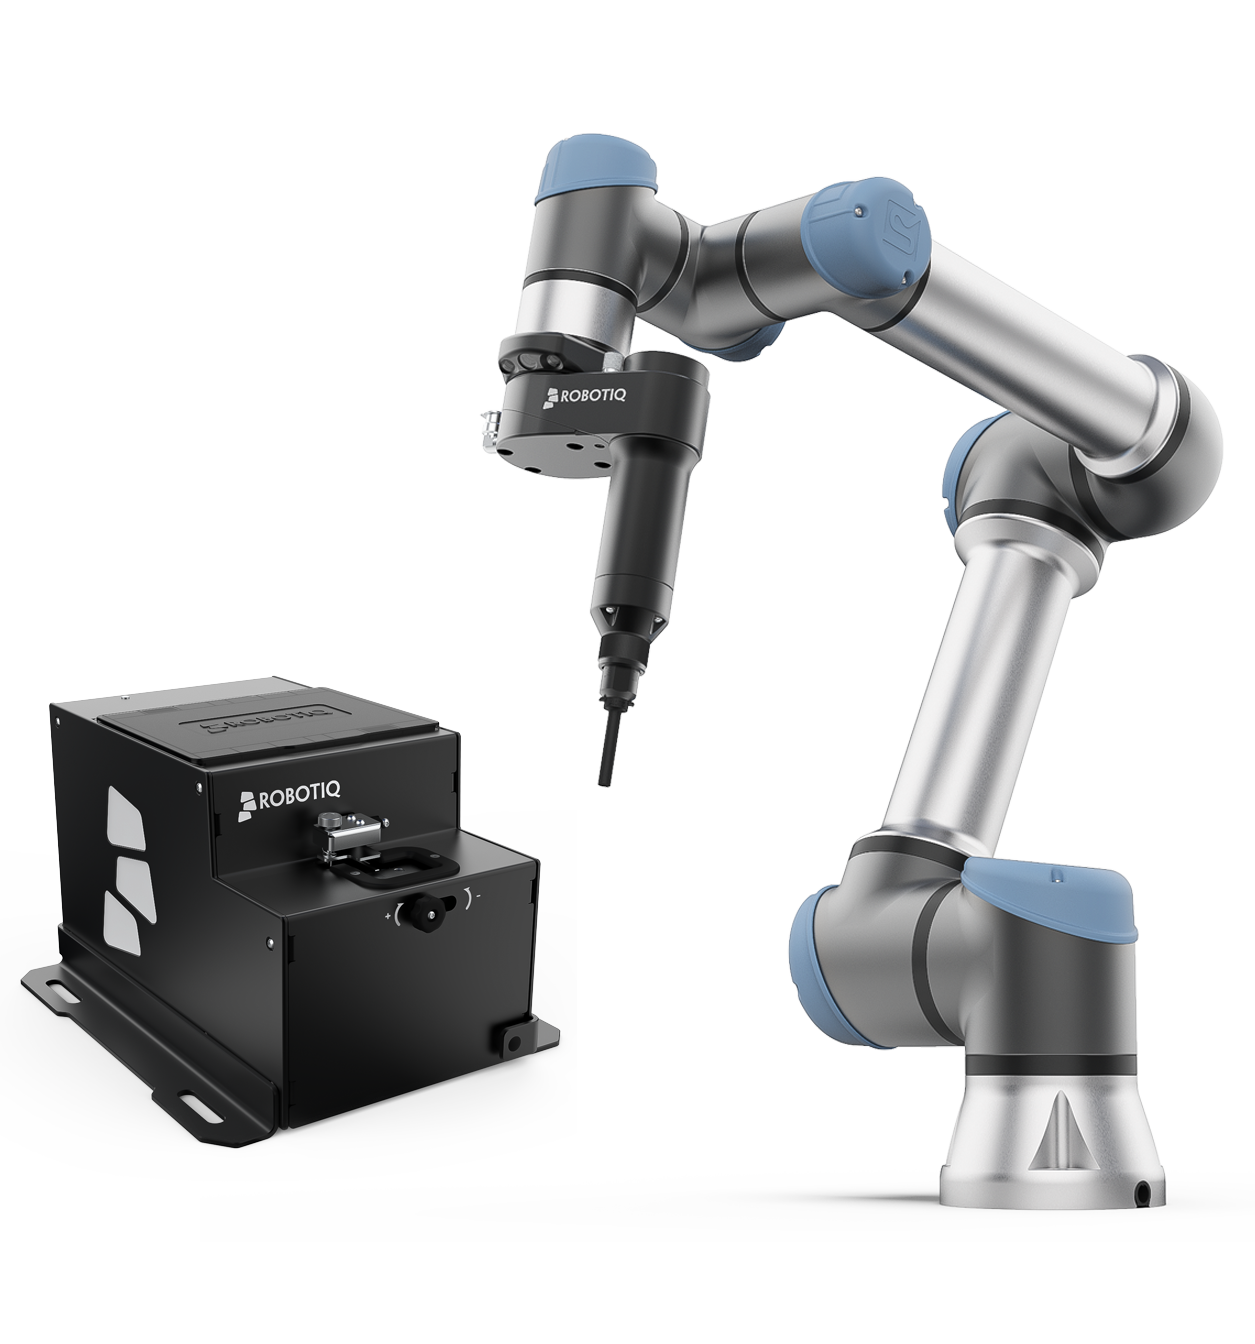 Machine Tending Solution - Robotiq